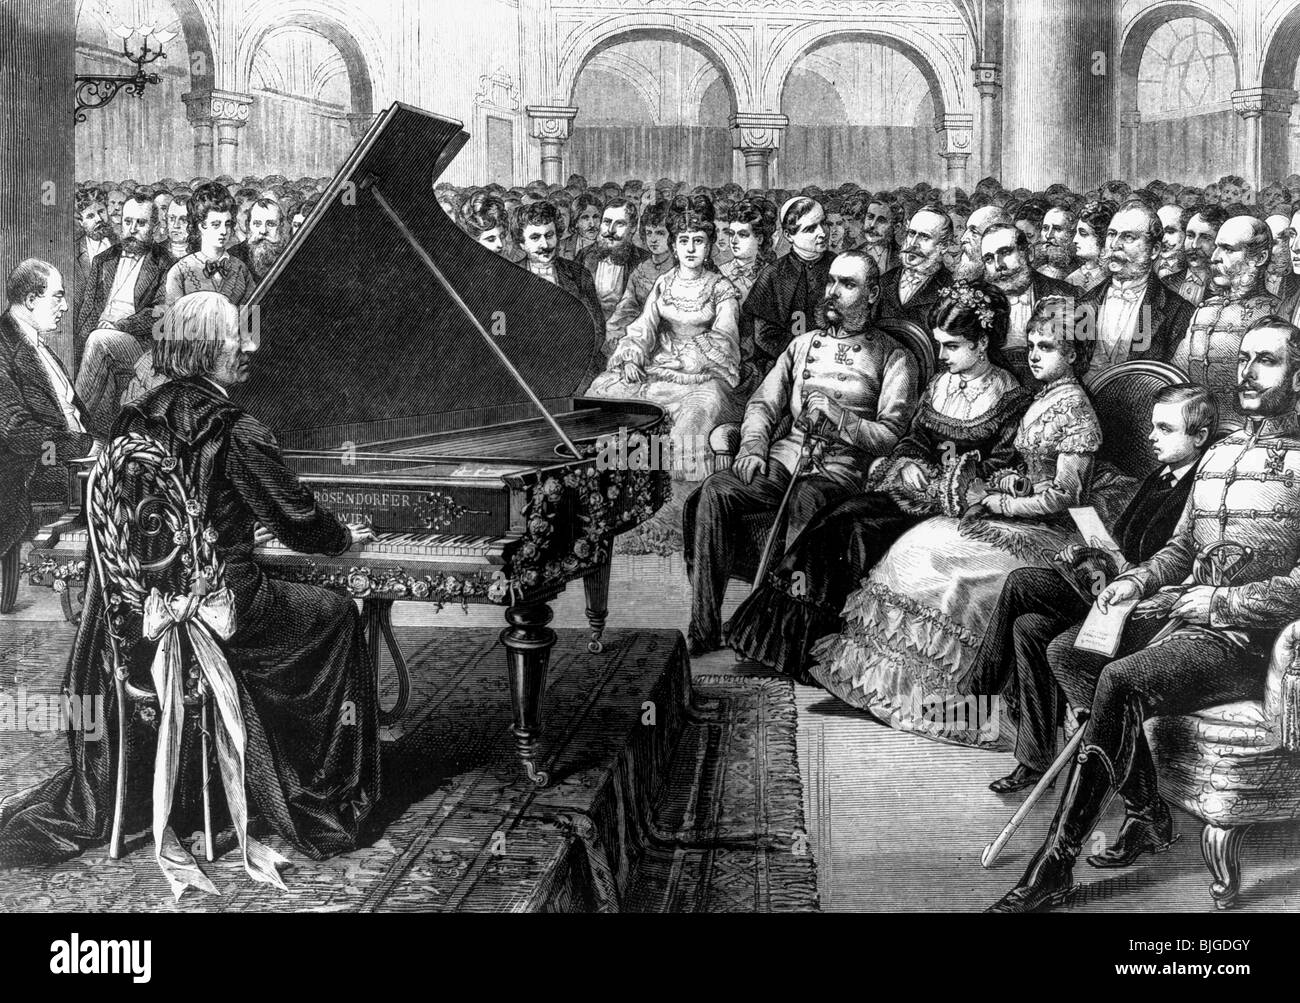 Liszt, Franz, 22.10.1811 - 31.7.1886, compositore e pianista ungherese, concerto per l'imperatore Francesco Giuseppe i d'Austria, Palazzo reale, Buda, 18.3.1872, incisione in legno contemporanea, , Foto Stock